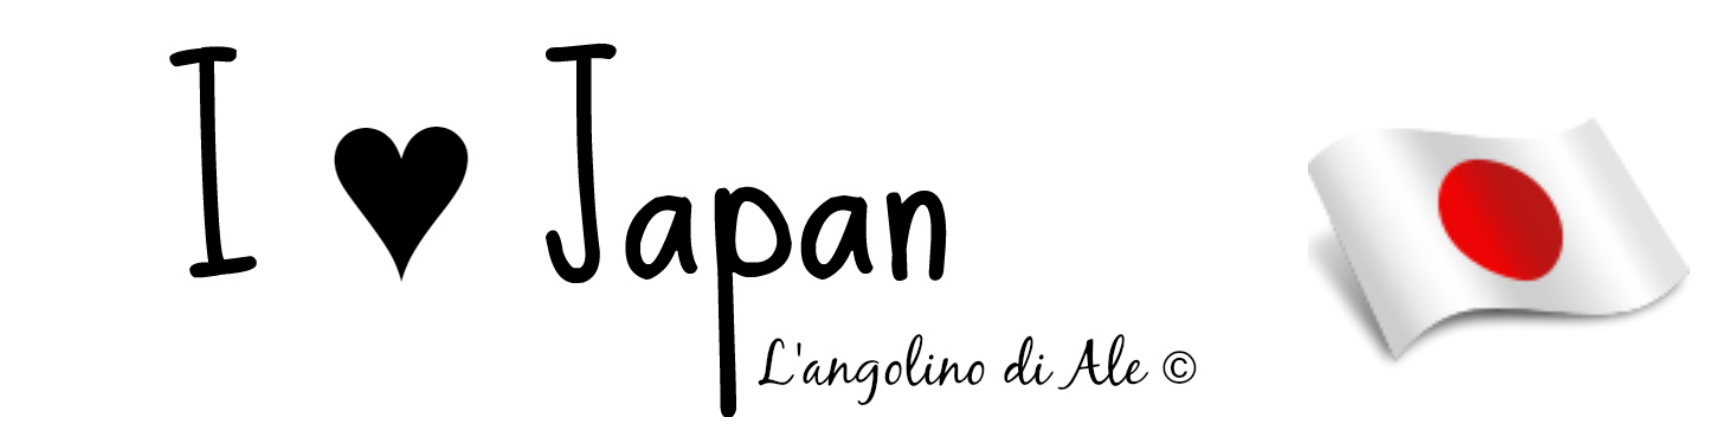 I ♥ Japan - L'angolino di Ale